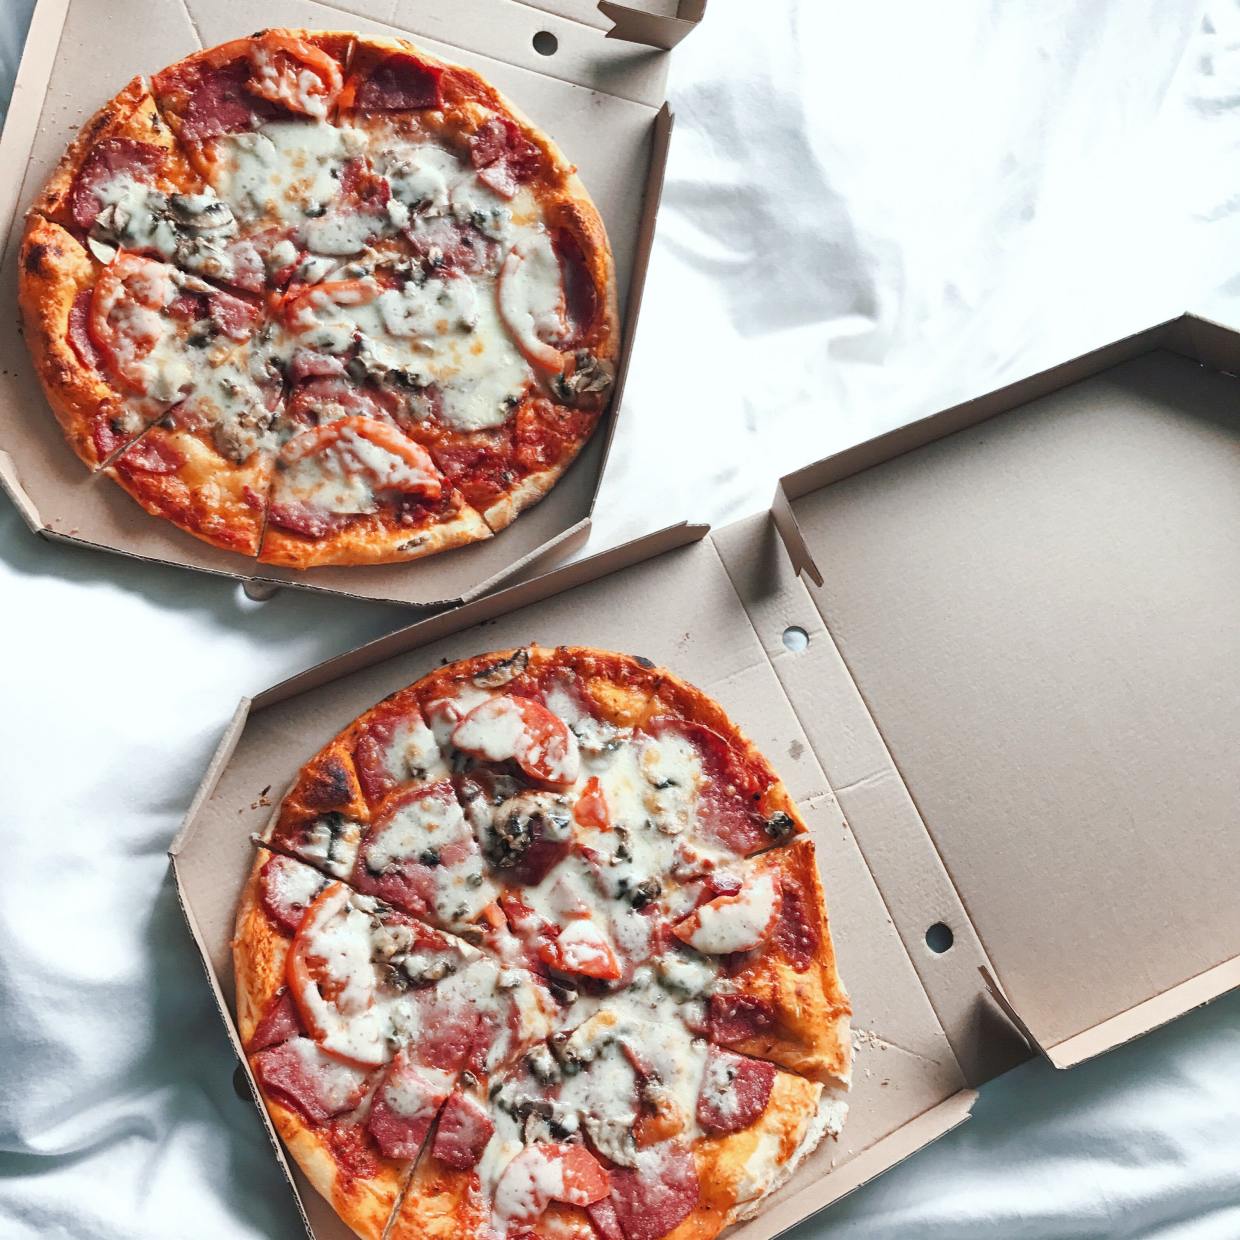  食べ終わった「ピザの箱」小さくする方法 